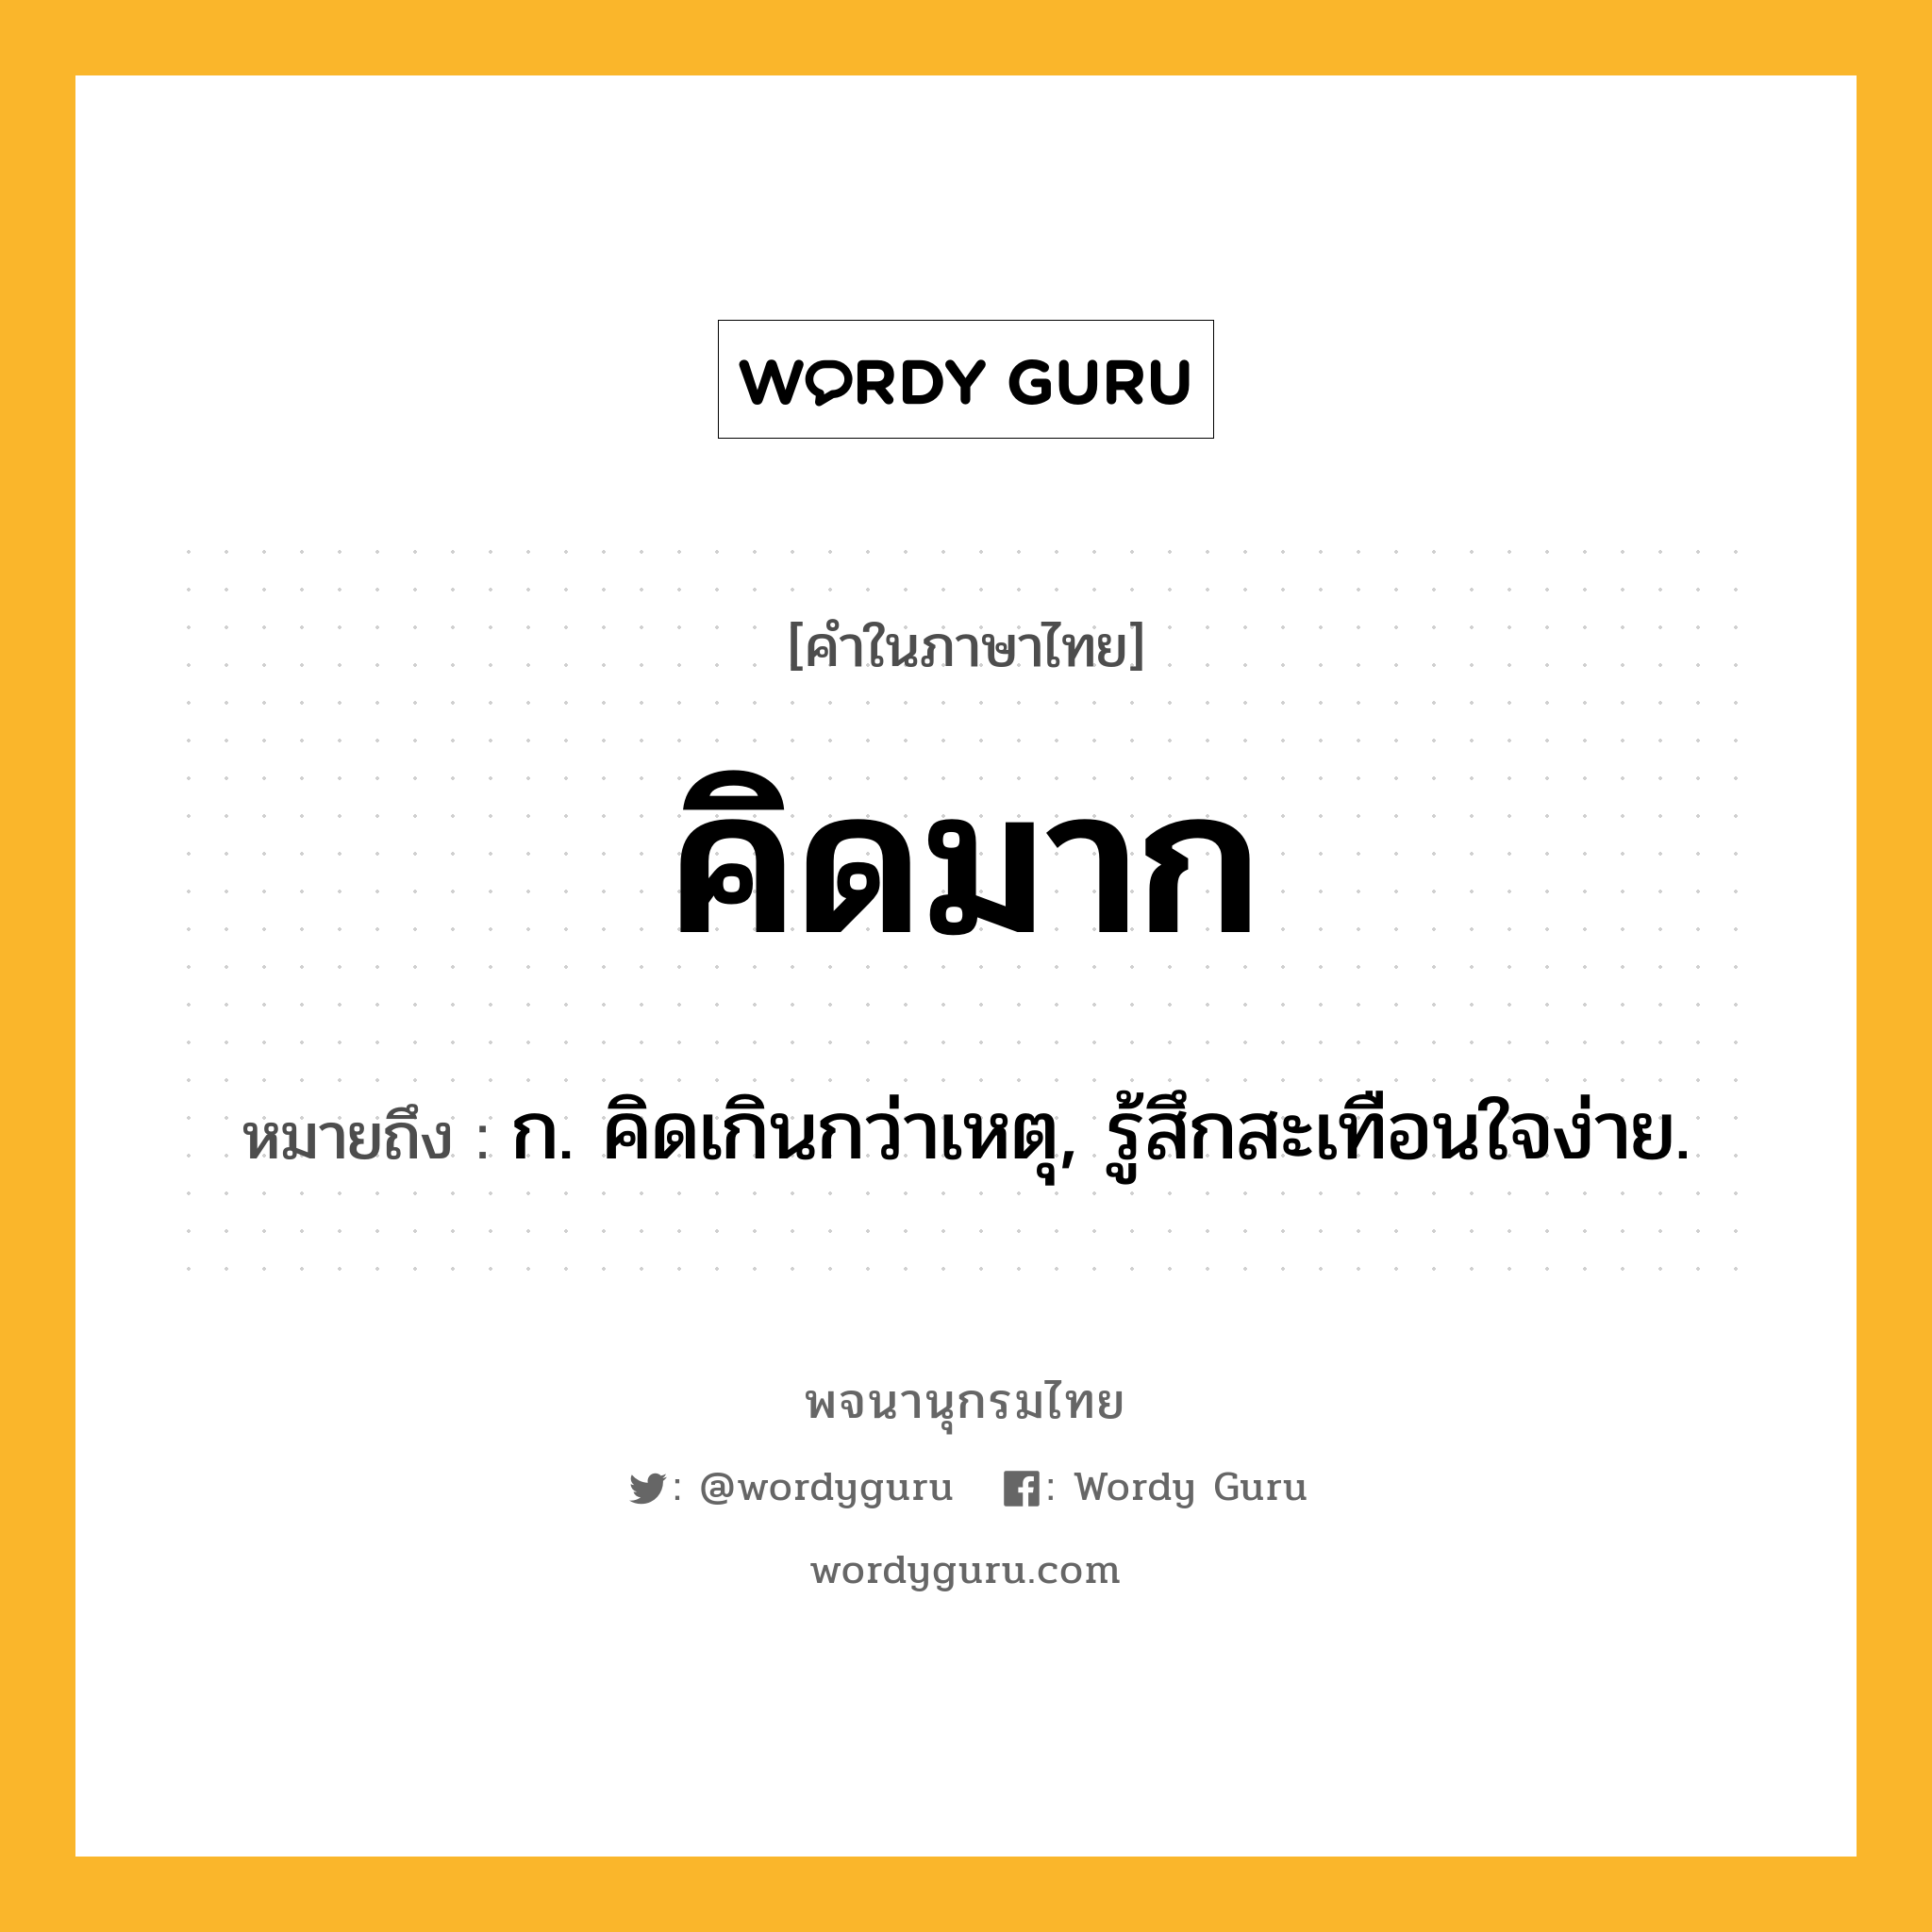 คิดมาก หมายถึงอะไร?, คำในภาษาไทย คิดมาก หมายถึง ก. คิดเกินกว่าเหตุ, รู้สึกสะเทือนใจง่าย.